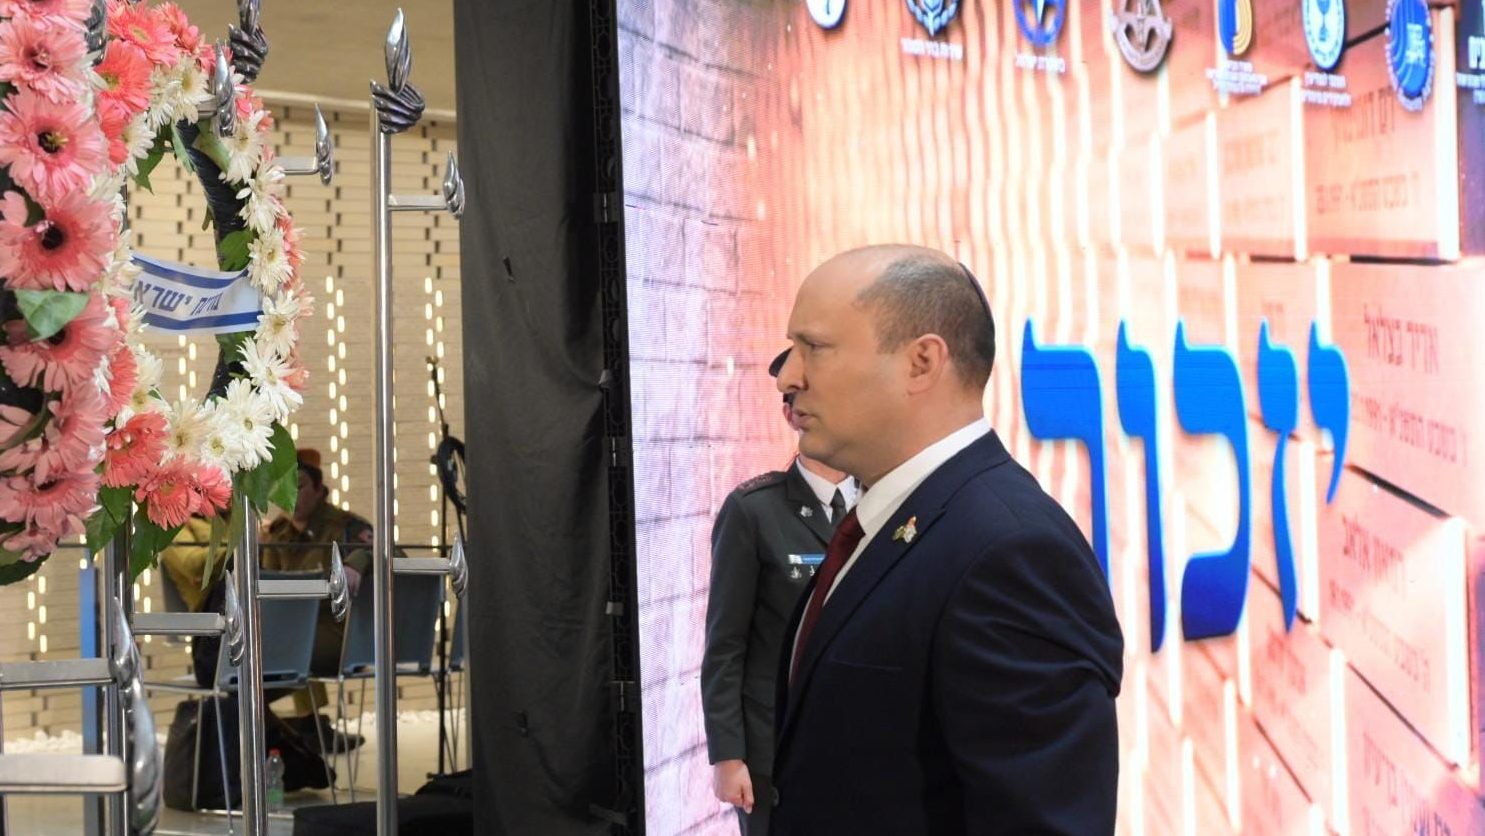 On Memorial Day, Israel’s Prime Minister Naftali Bennett Calls for Unity